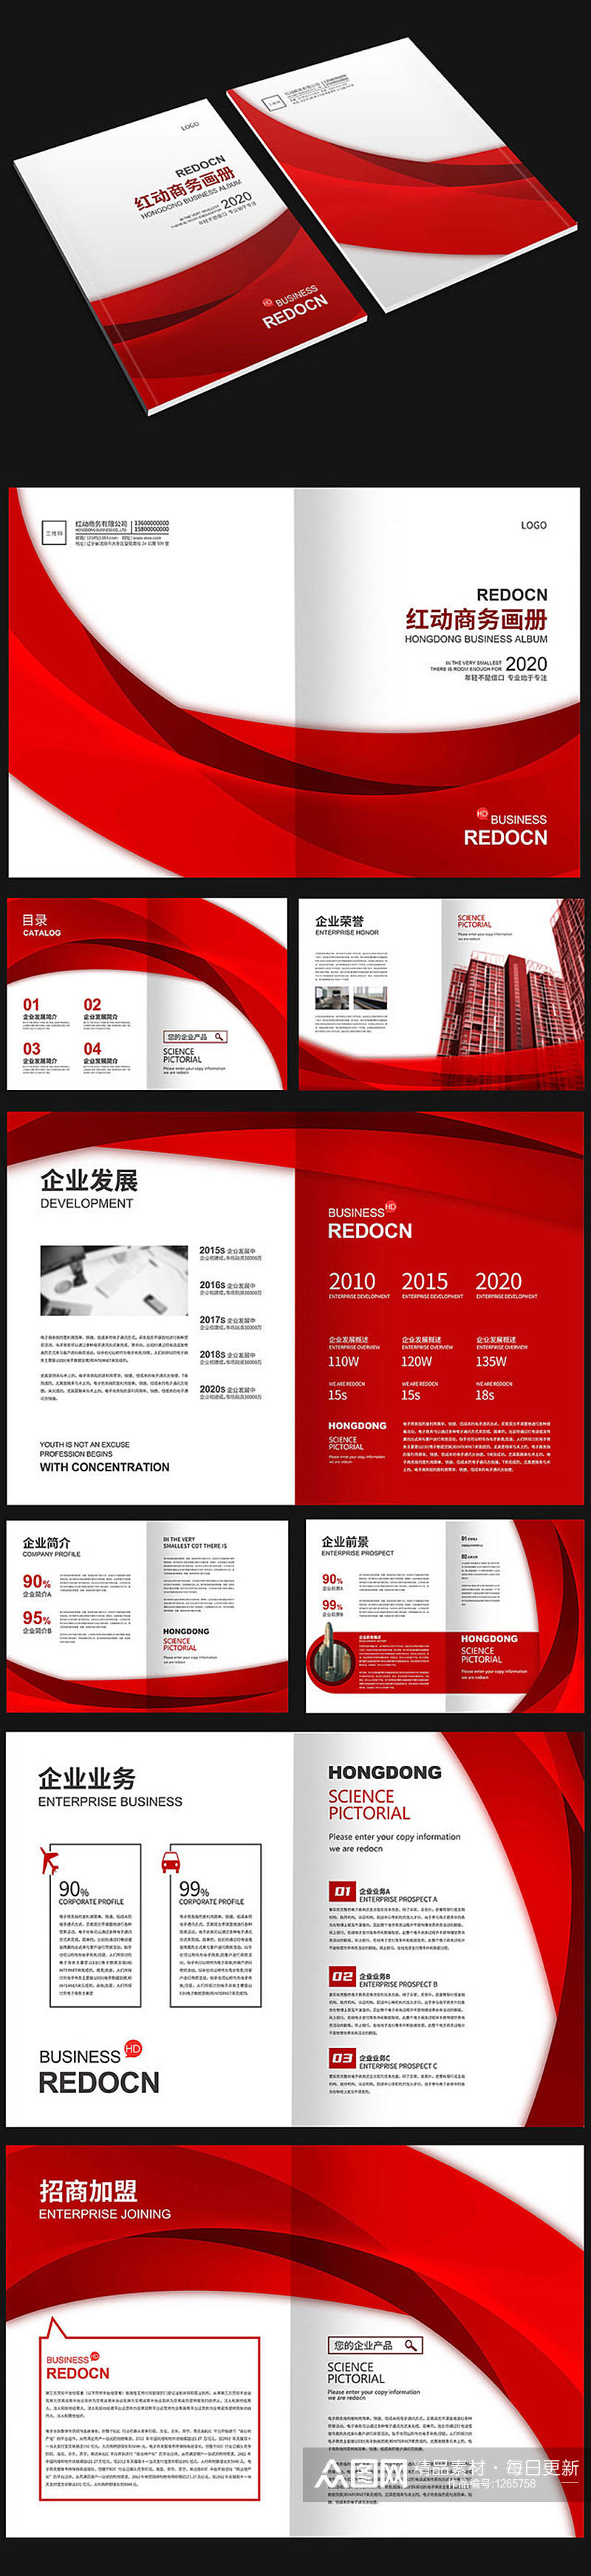 红色商务画册设计素材